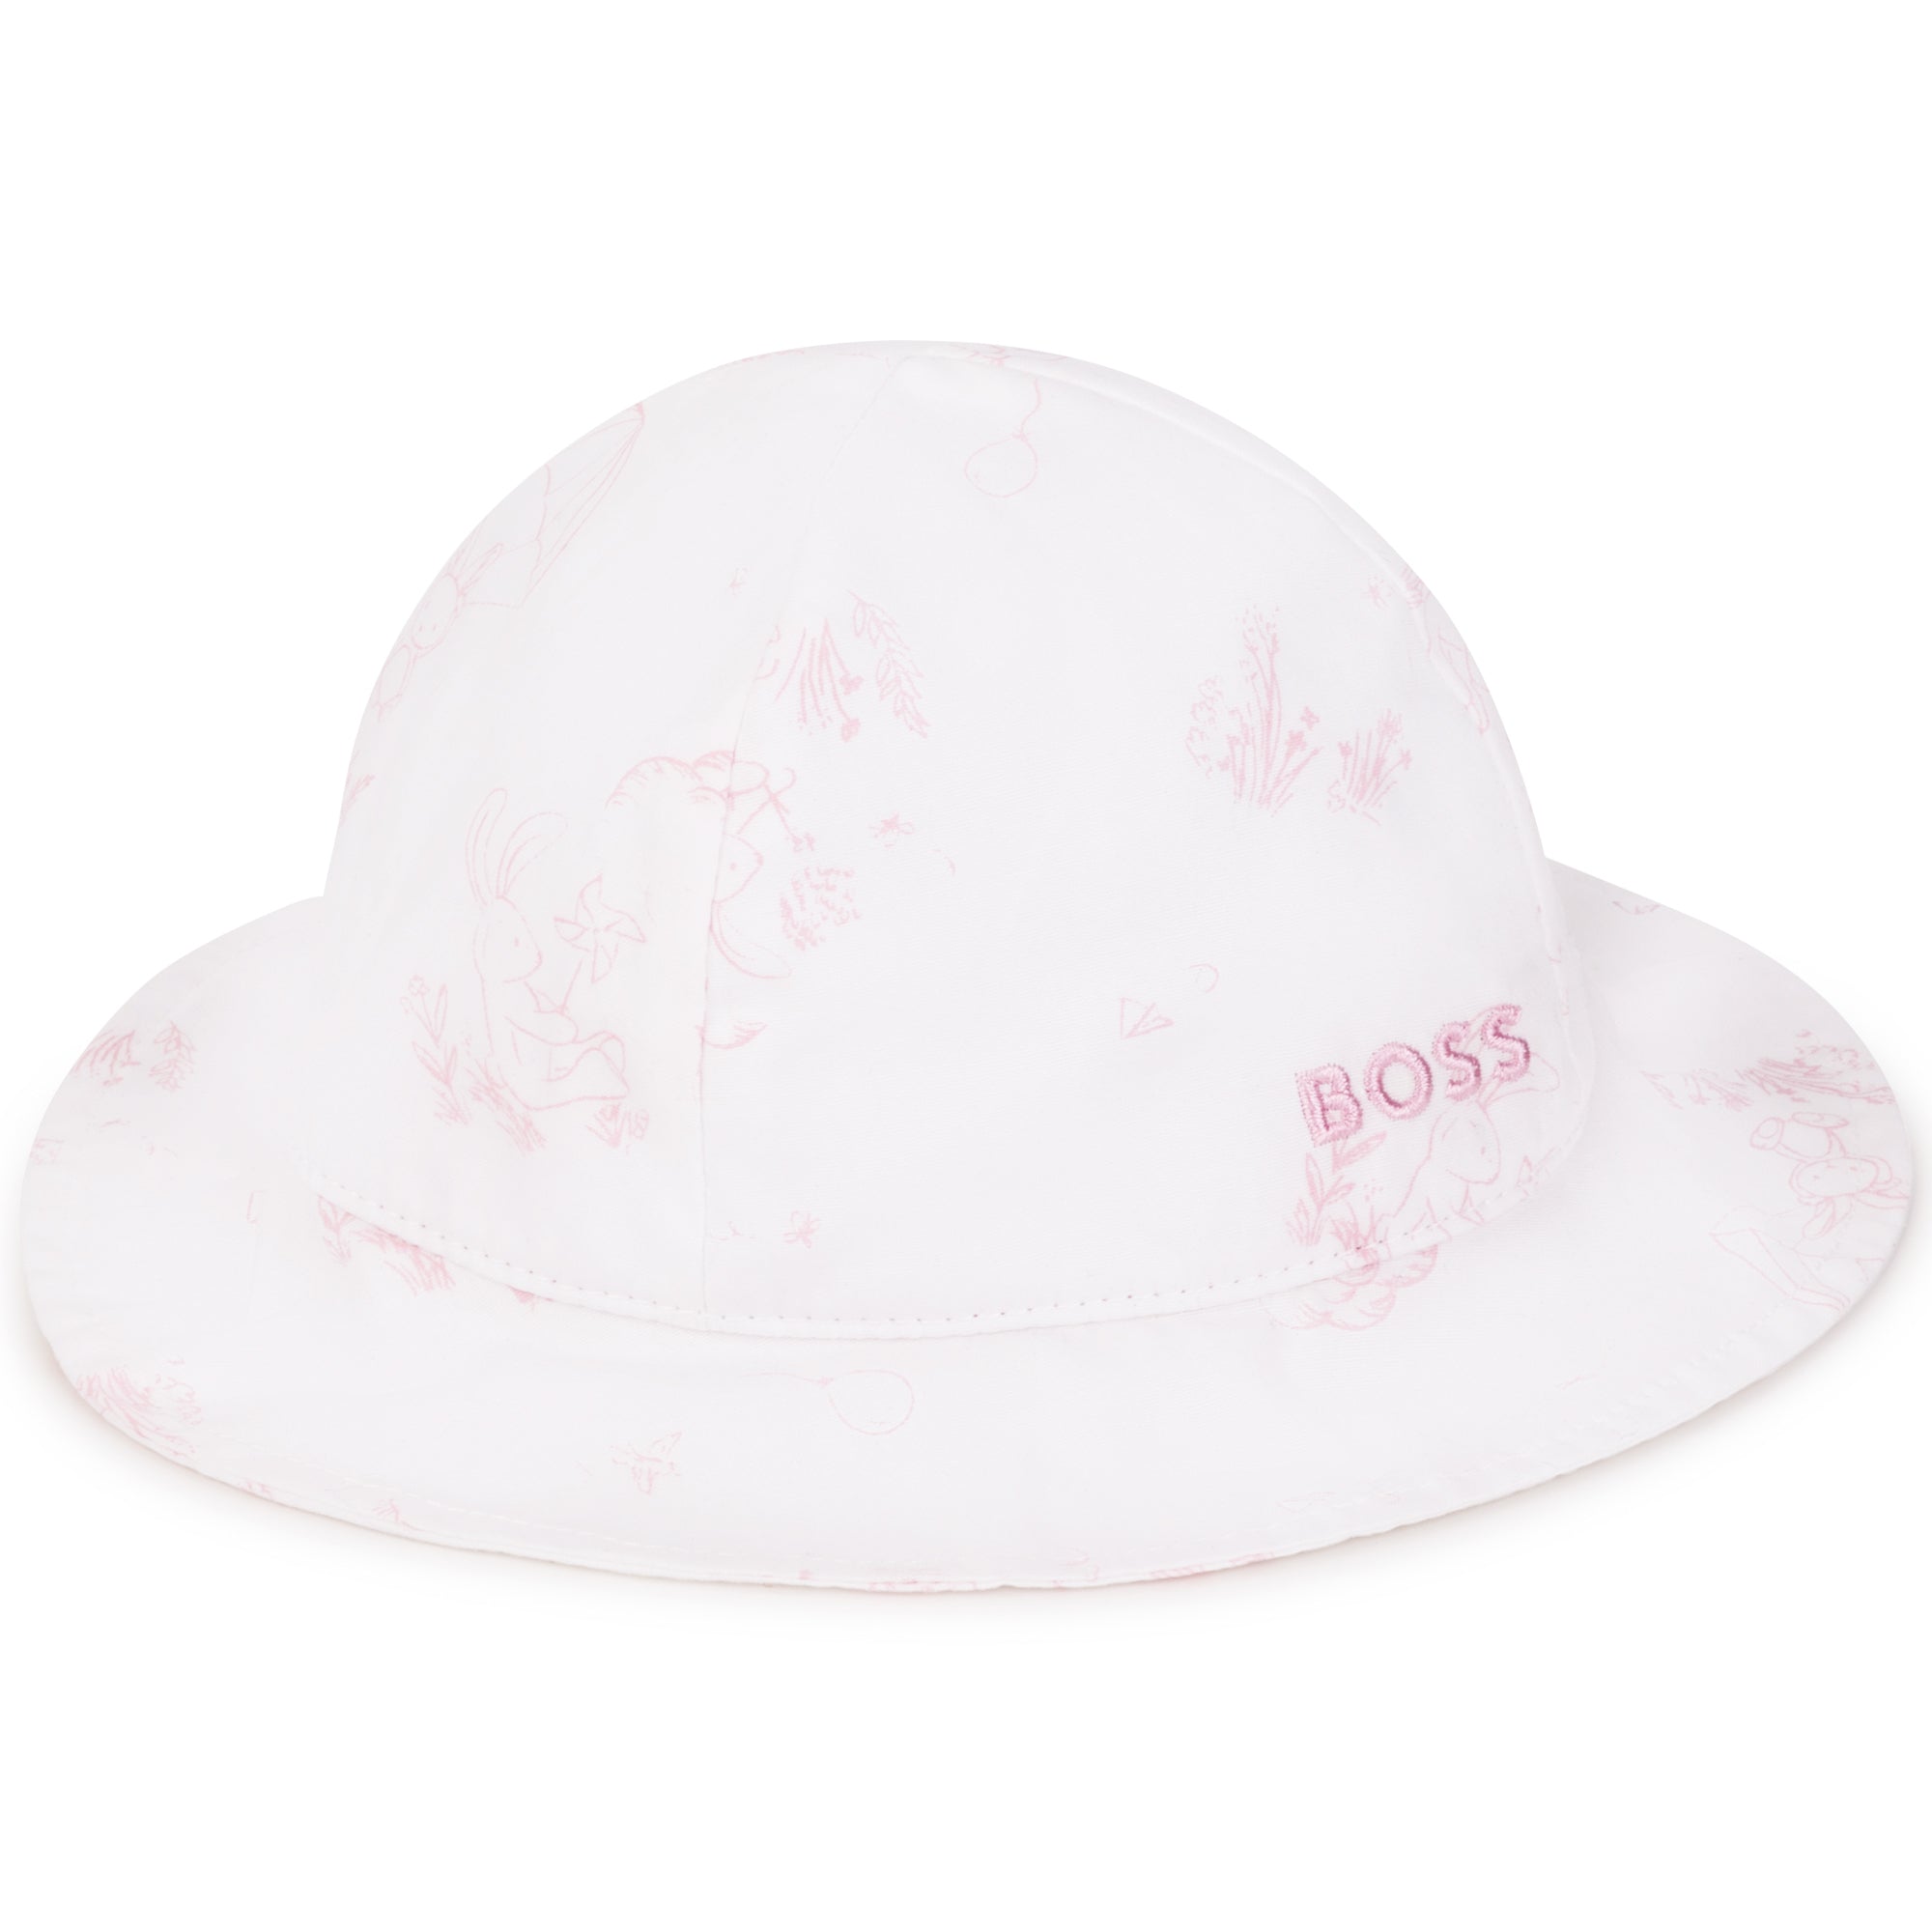 Hugo Boss Baby Girls White Hat